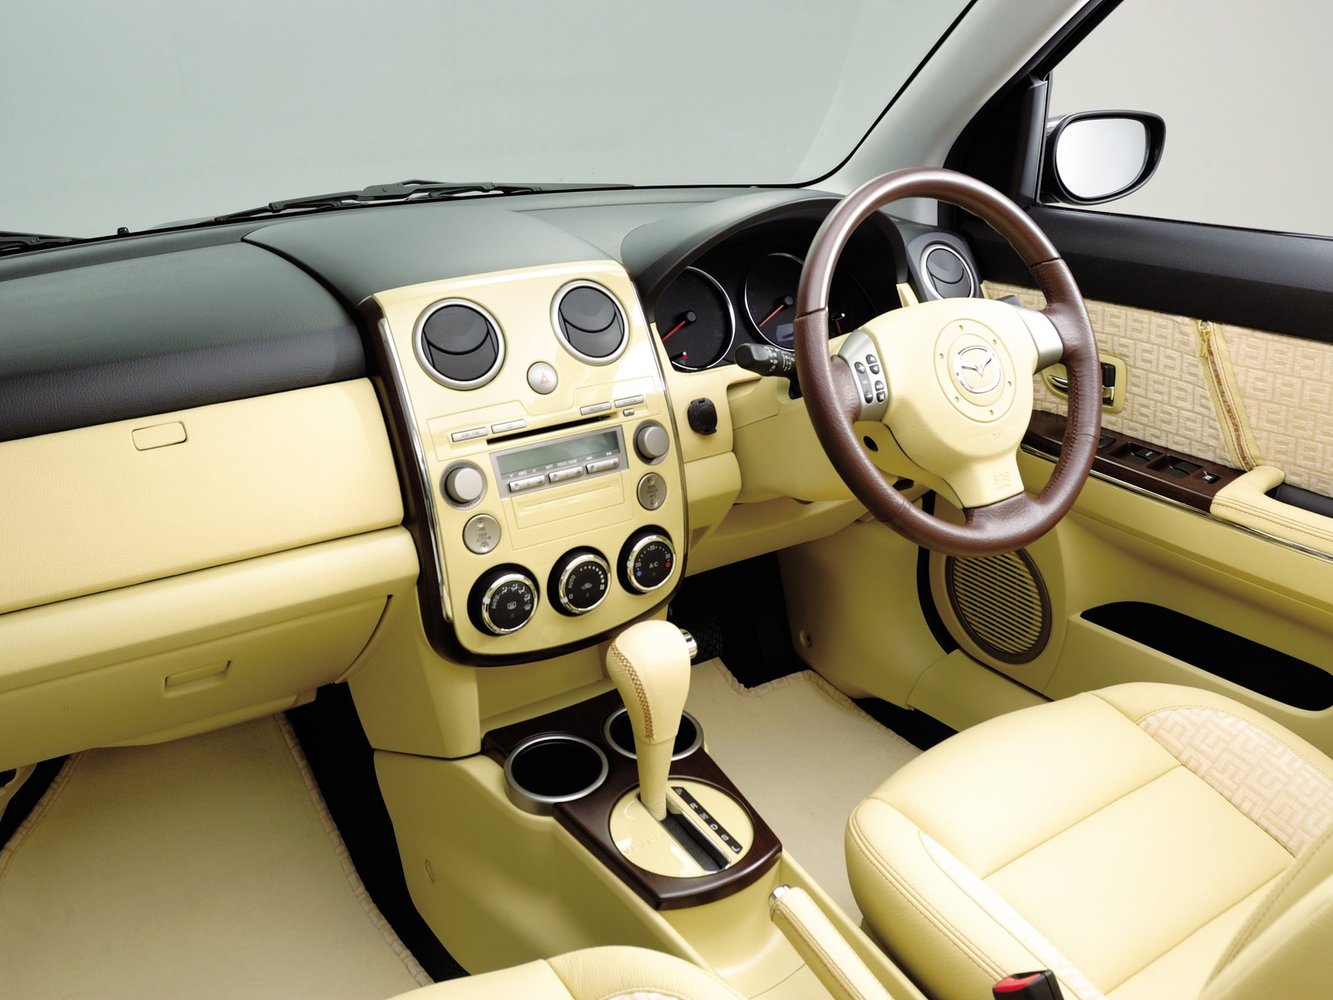 хэтчбек 5 дв. Mazda Verisa 2004 - 2016г выпуска модификация 1.5 AT (113 л.с.)